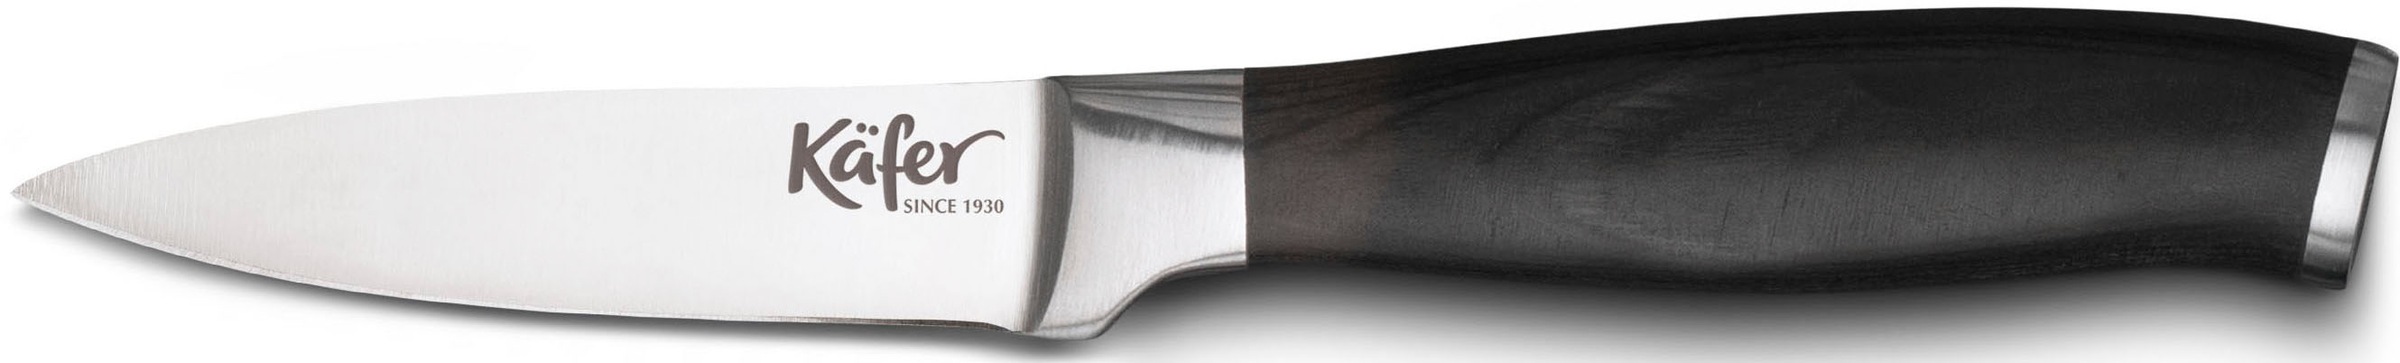 Käfer Magnet-Messerblock, 5 tlg., inkl. 3 Messern, 1 Schere, Eisgehärtete Klingen aus rostfreiem Stahl